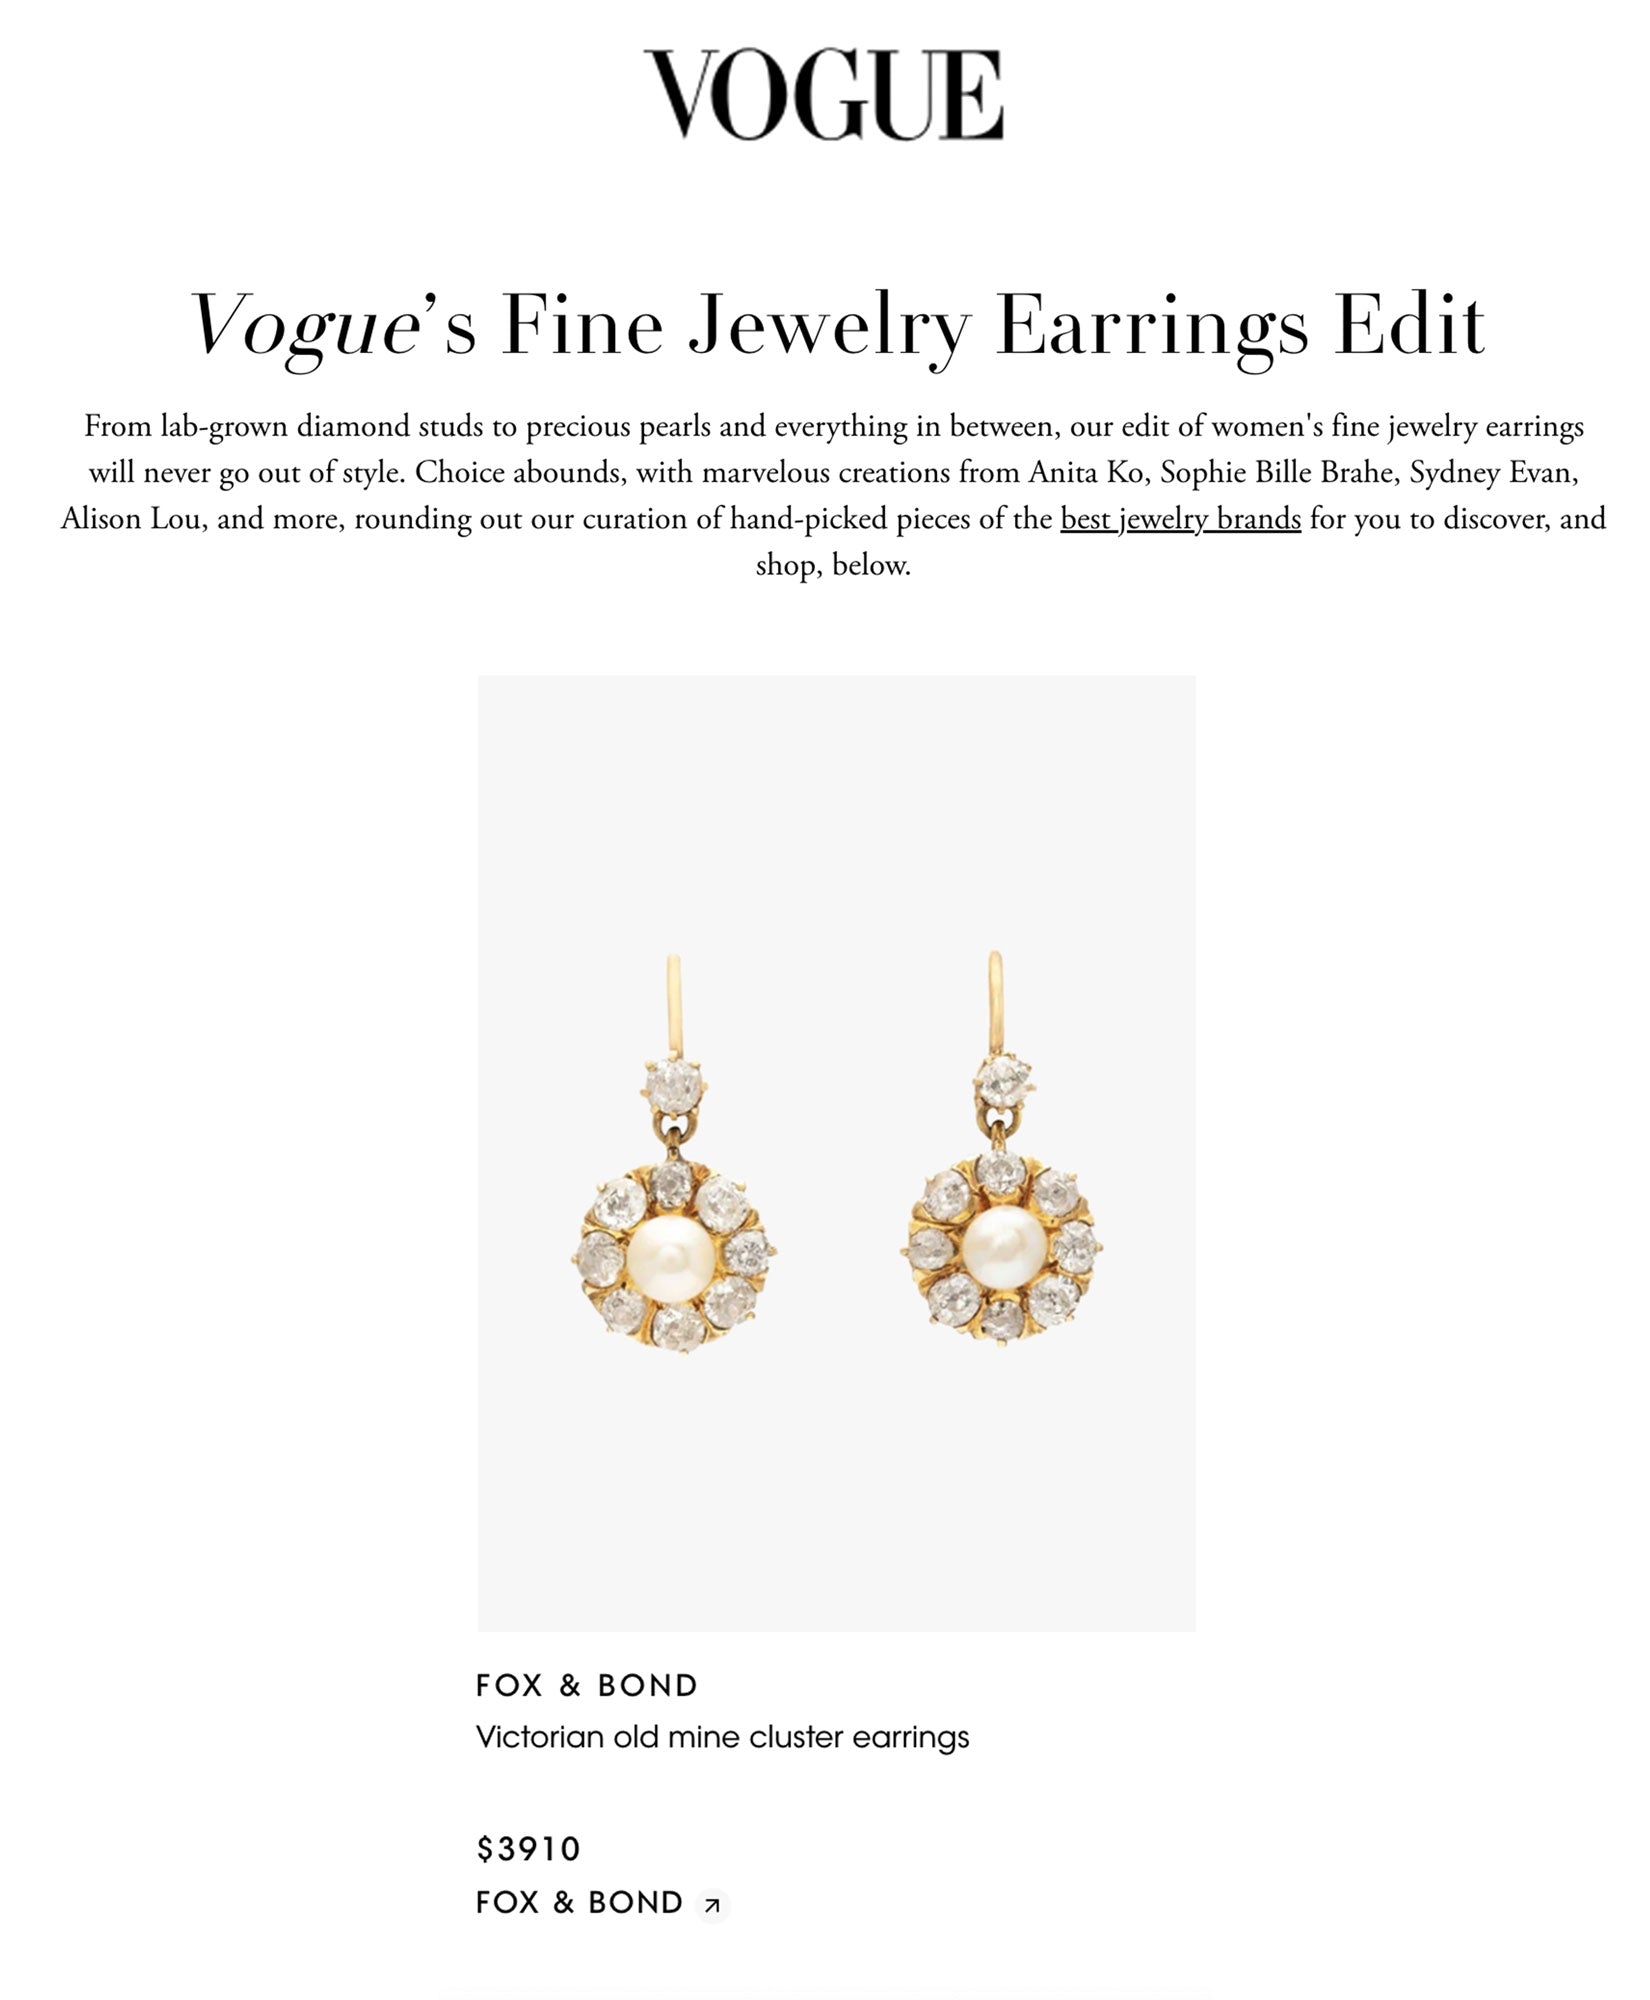 Vogue’s Fine Jewelry Earrings Edit